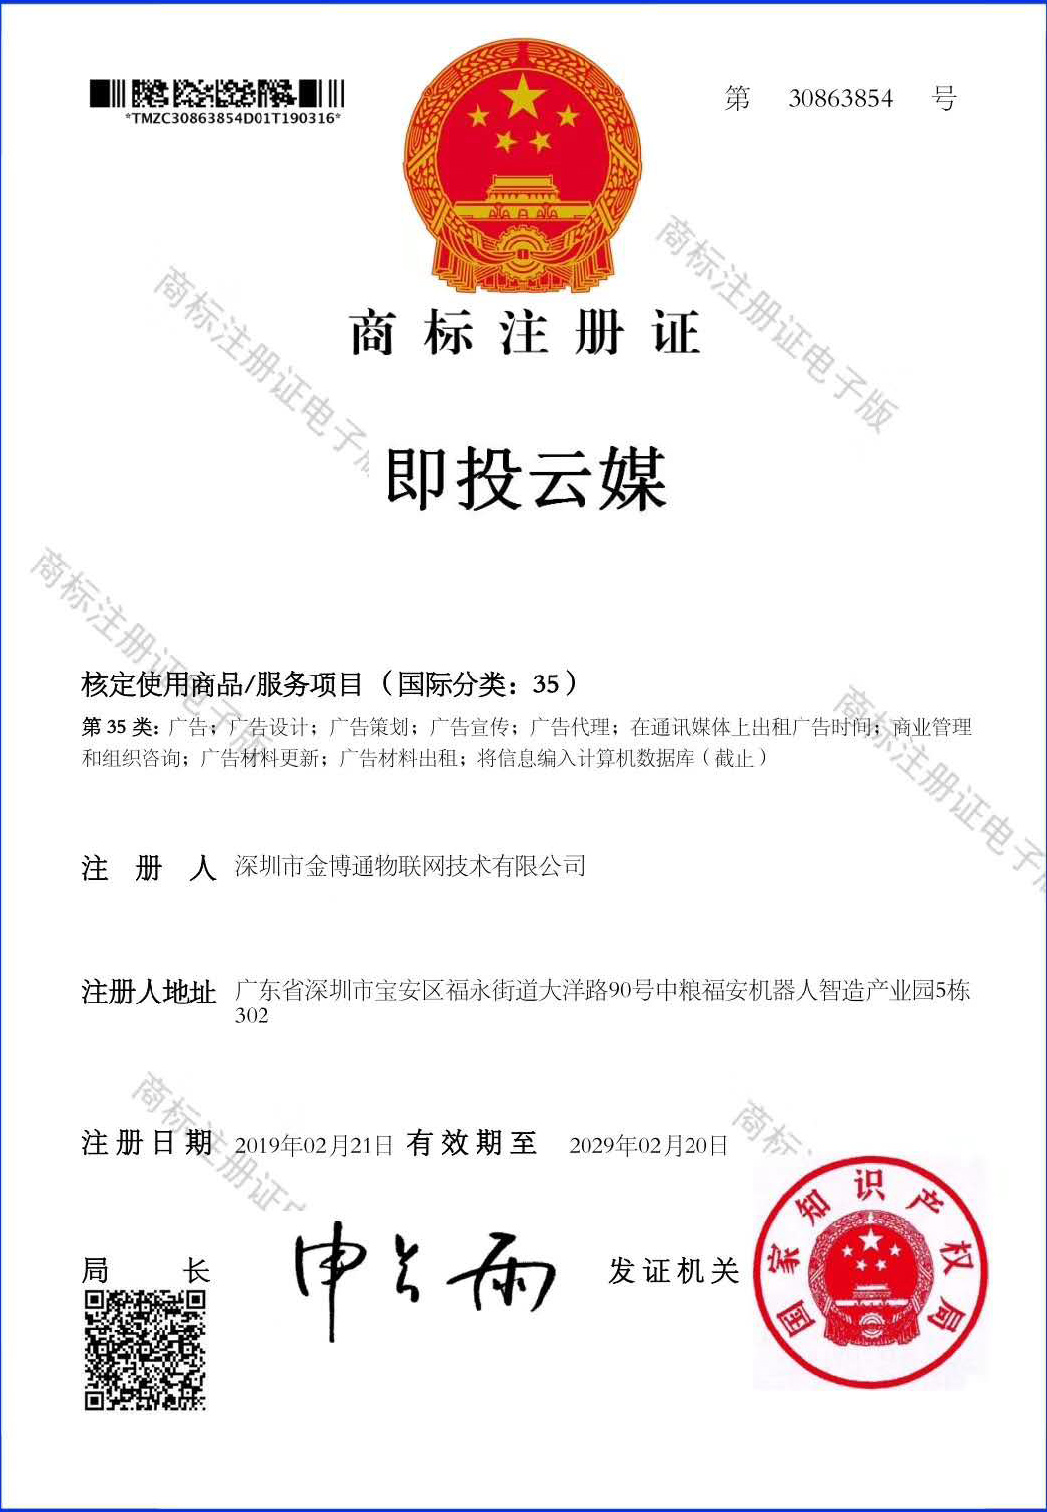 Ji tou yun mei trademark